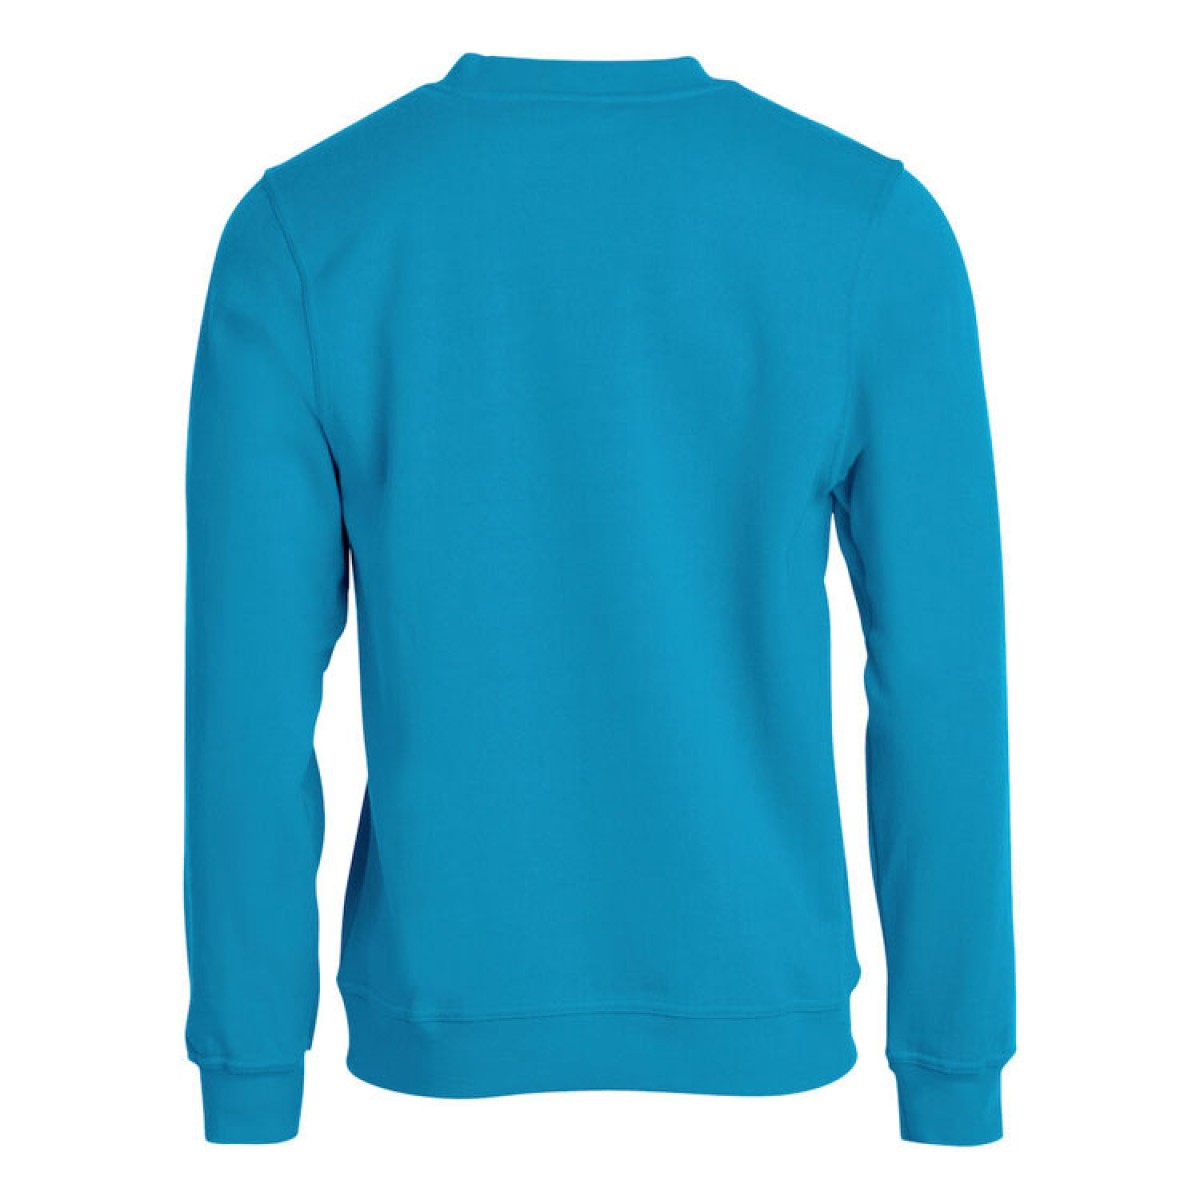 scala logo sweater turquoise